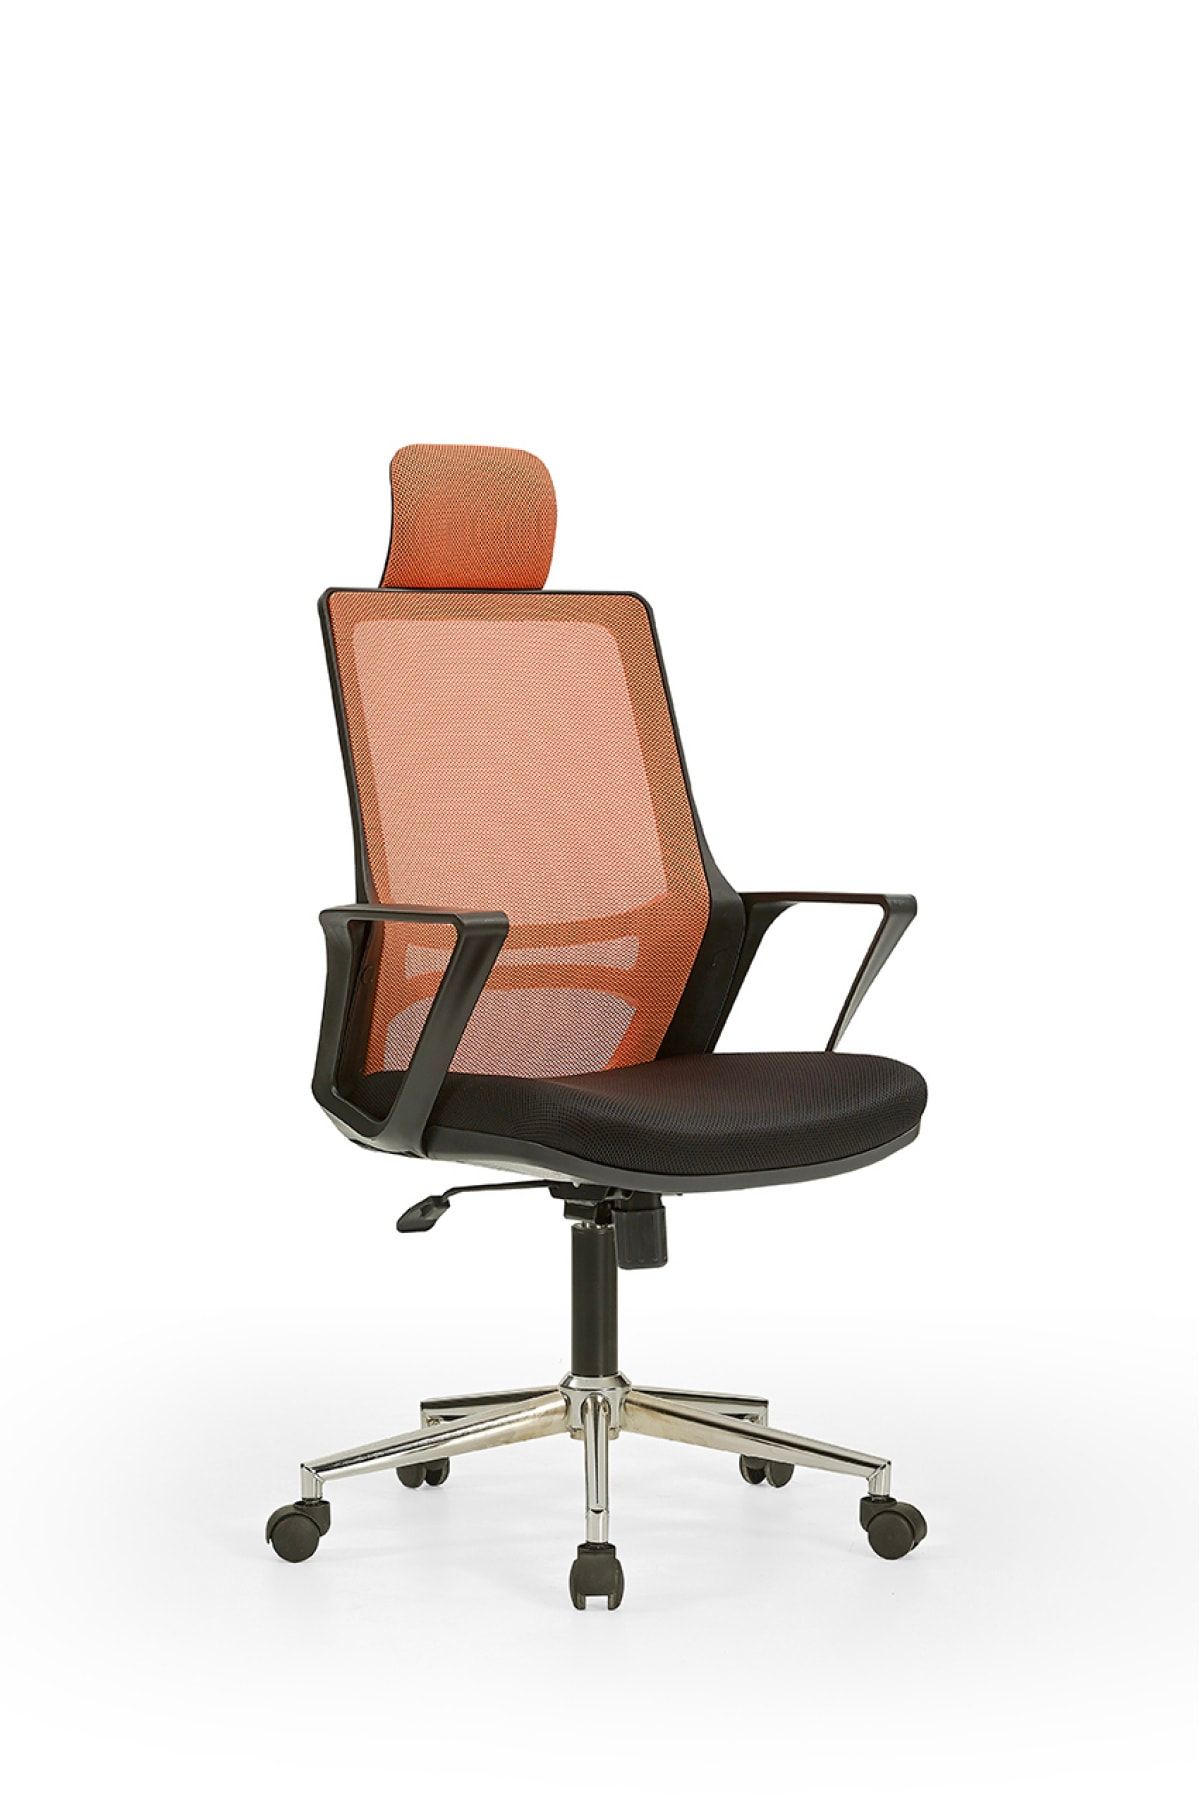 MEHMET YAREN BURO Arya1 Bilgisayar Koltuğu - Ofis - Müdür - Büro - Çalışma Sandalyesi Turuncu Siyah Renk Krom Ayaklı